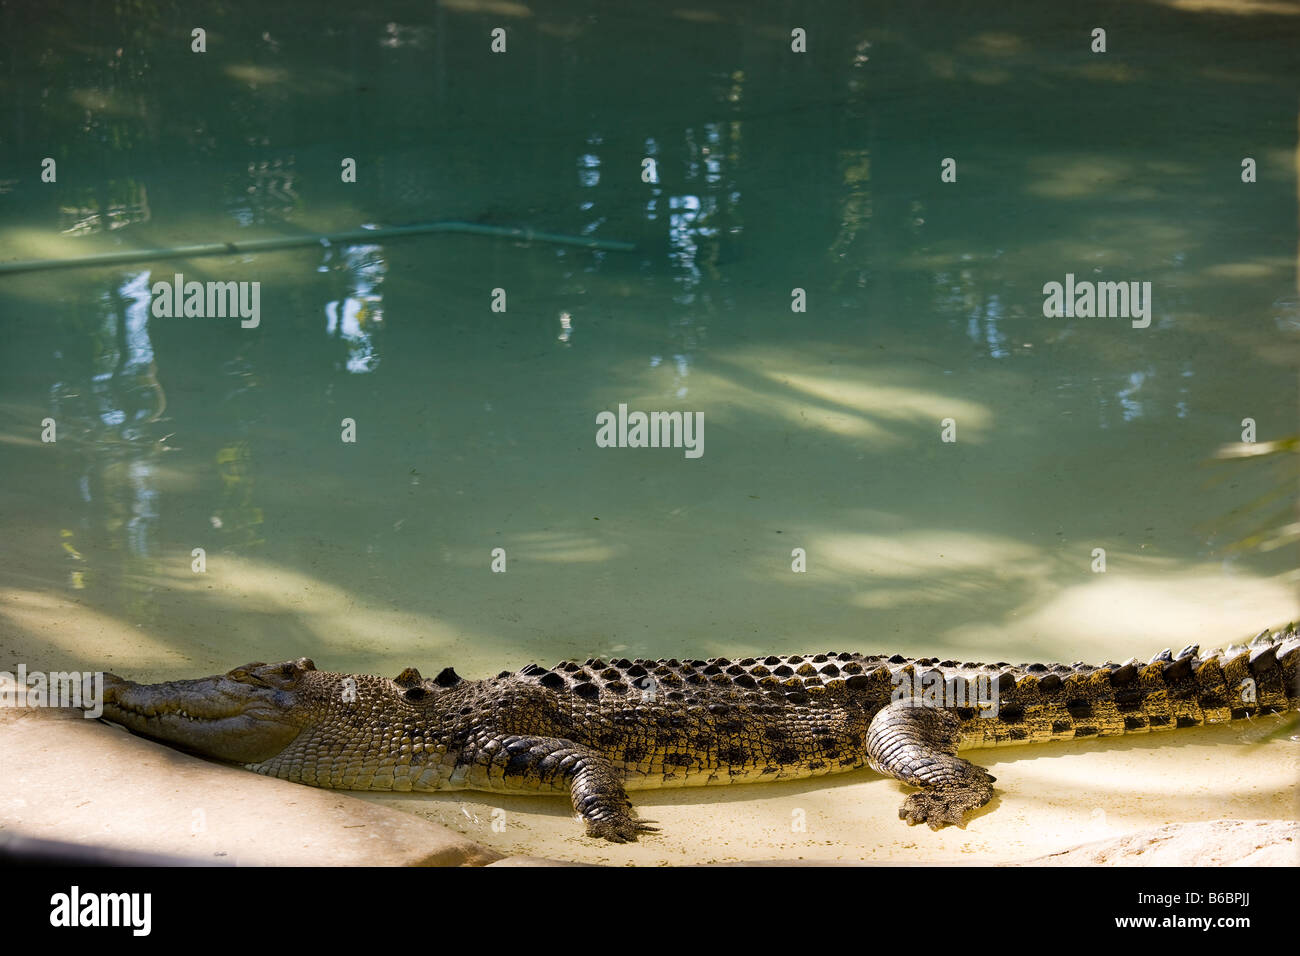 Salzwasser-Krokodil in der Australia Zoo, der Zoo von Steve Irwin Familie in der Nähe von Brisbane Australien. Stockfoto